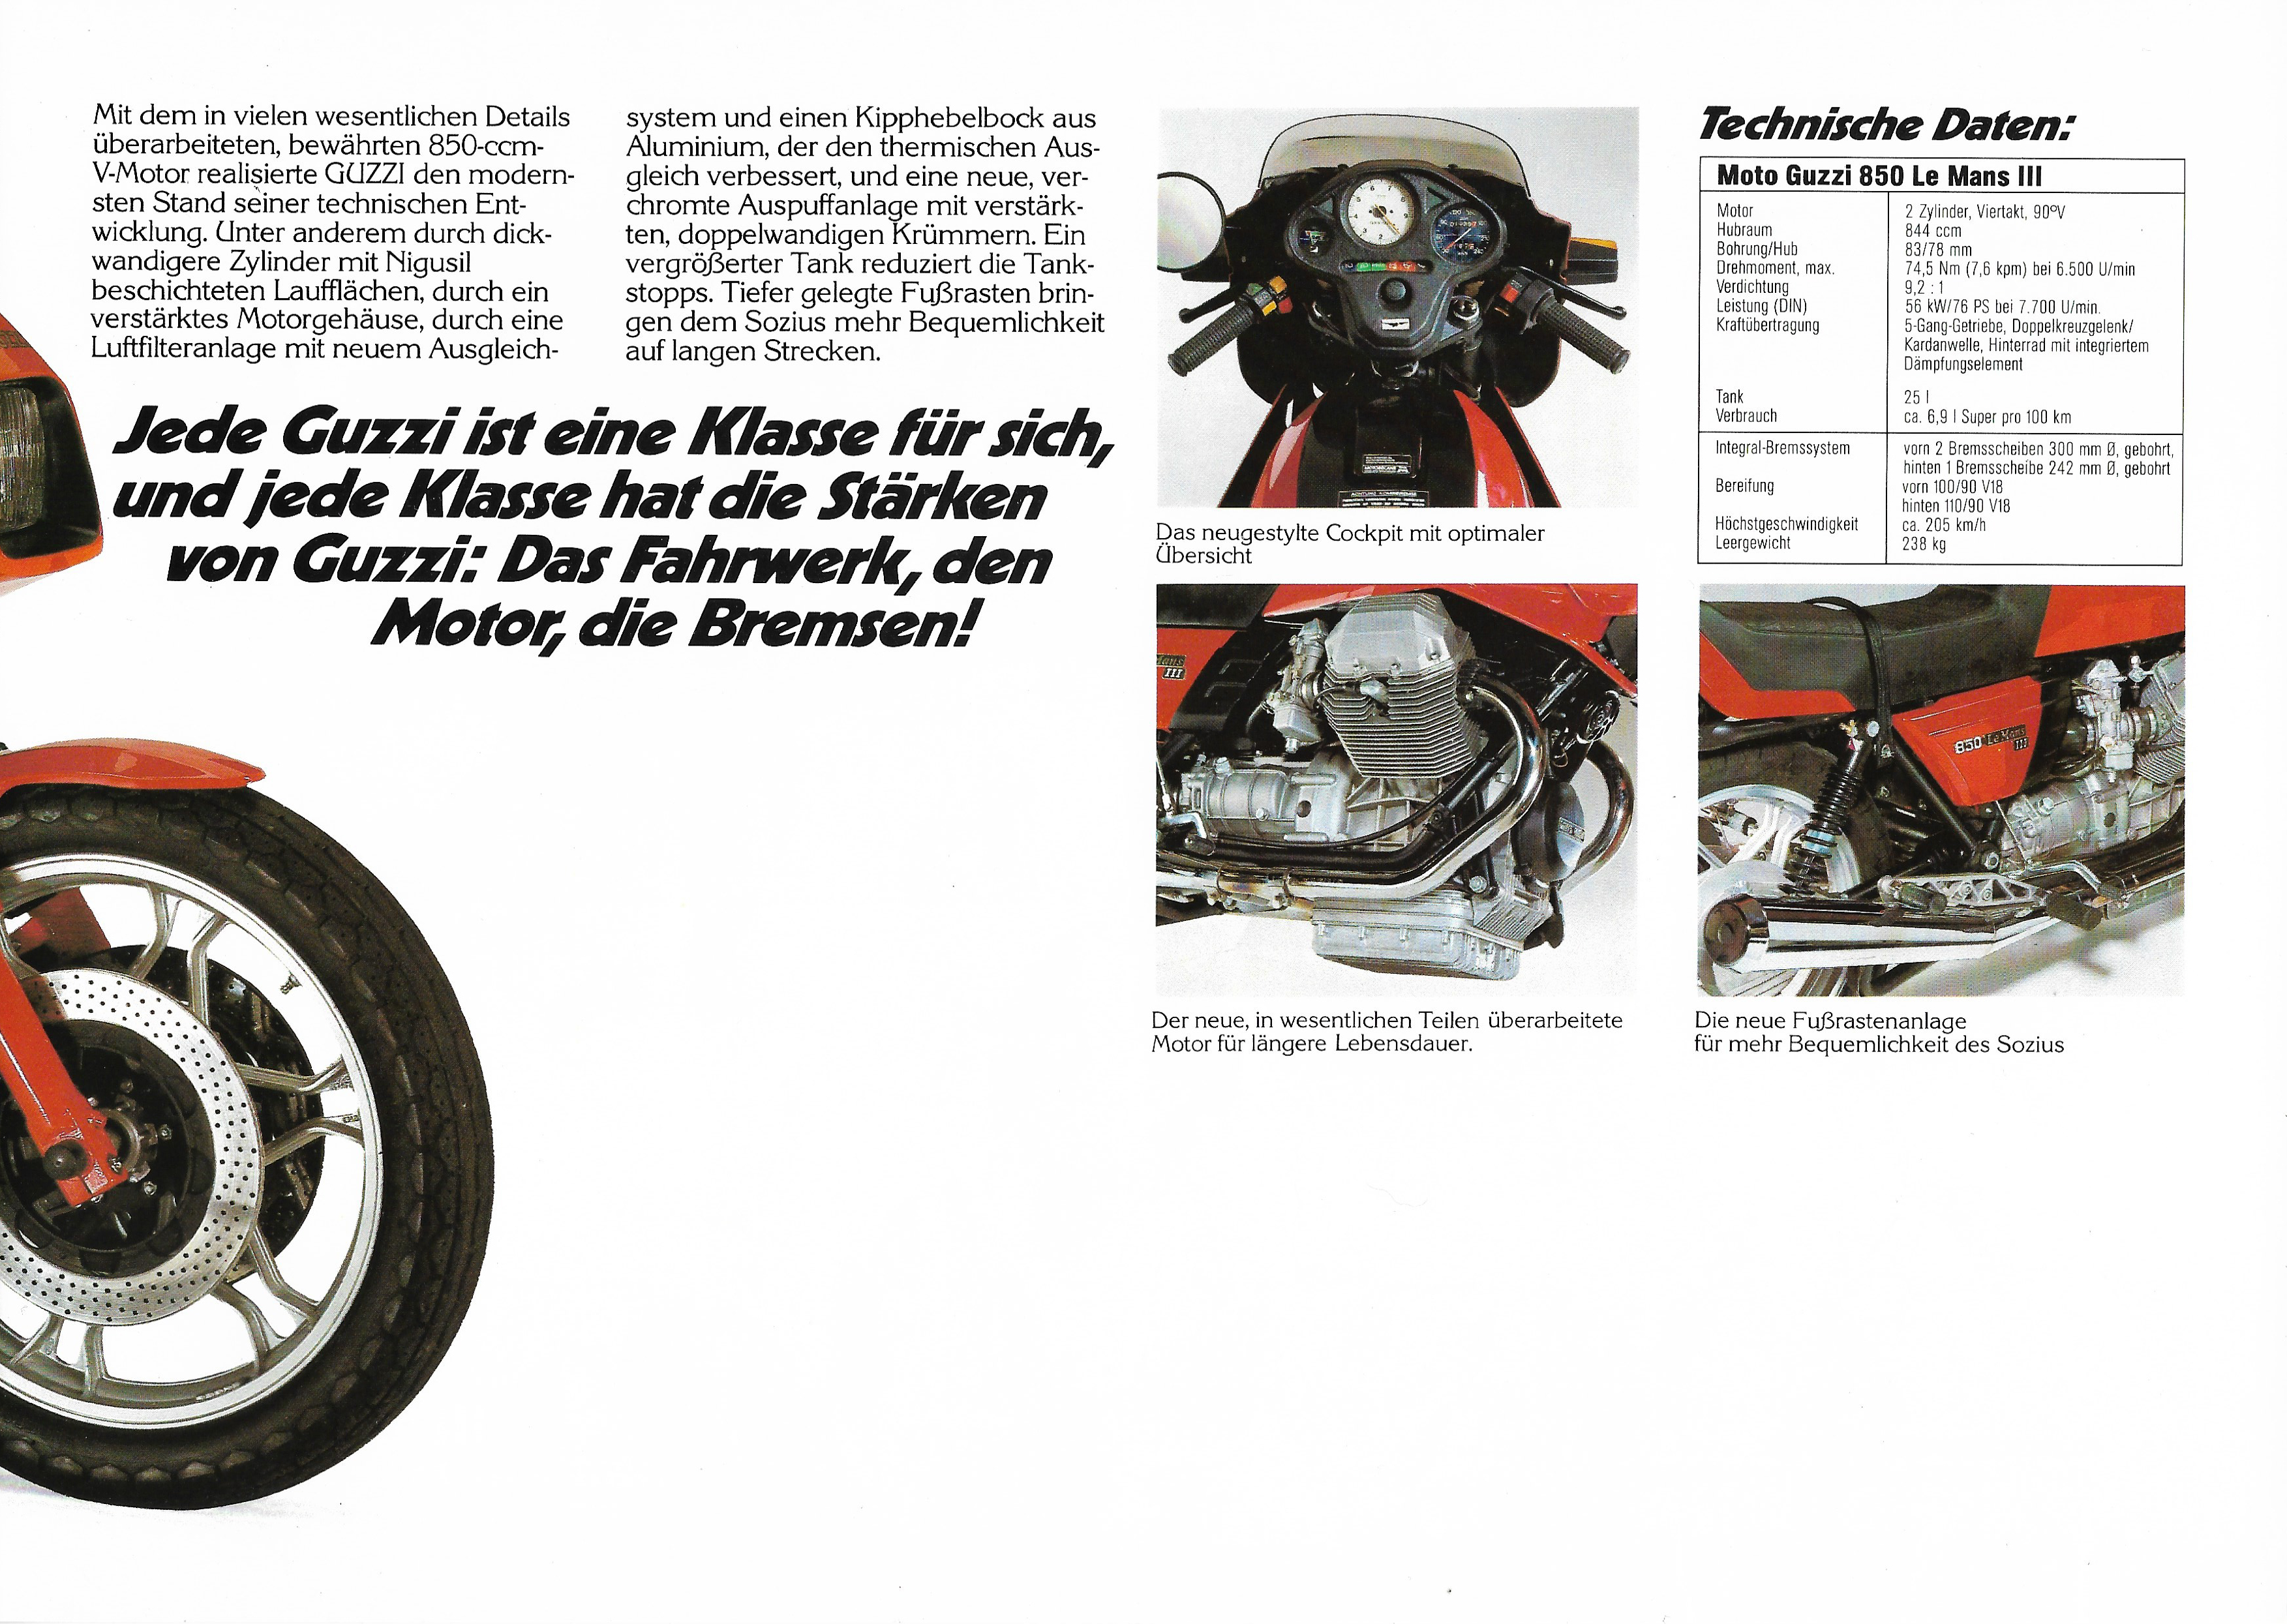 Moto Guzzi factory brochure: Moto Guzzi 850 Le Mans III, V1000 III Le Mans [German]